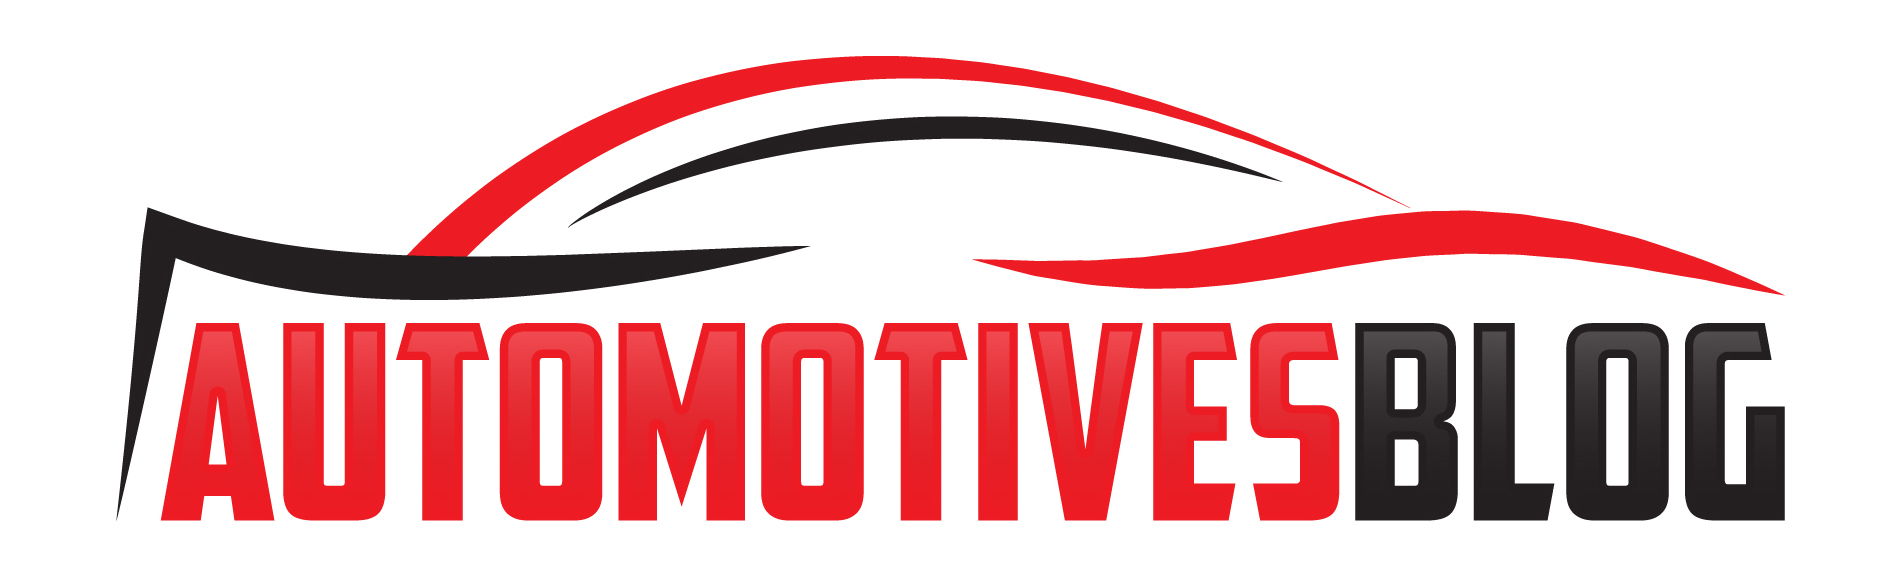 AUTOMOTIVESBLOG – Auto Blog, Latest Automotive News